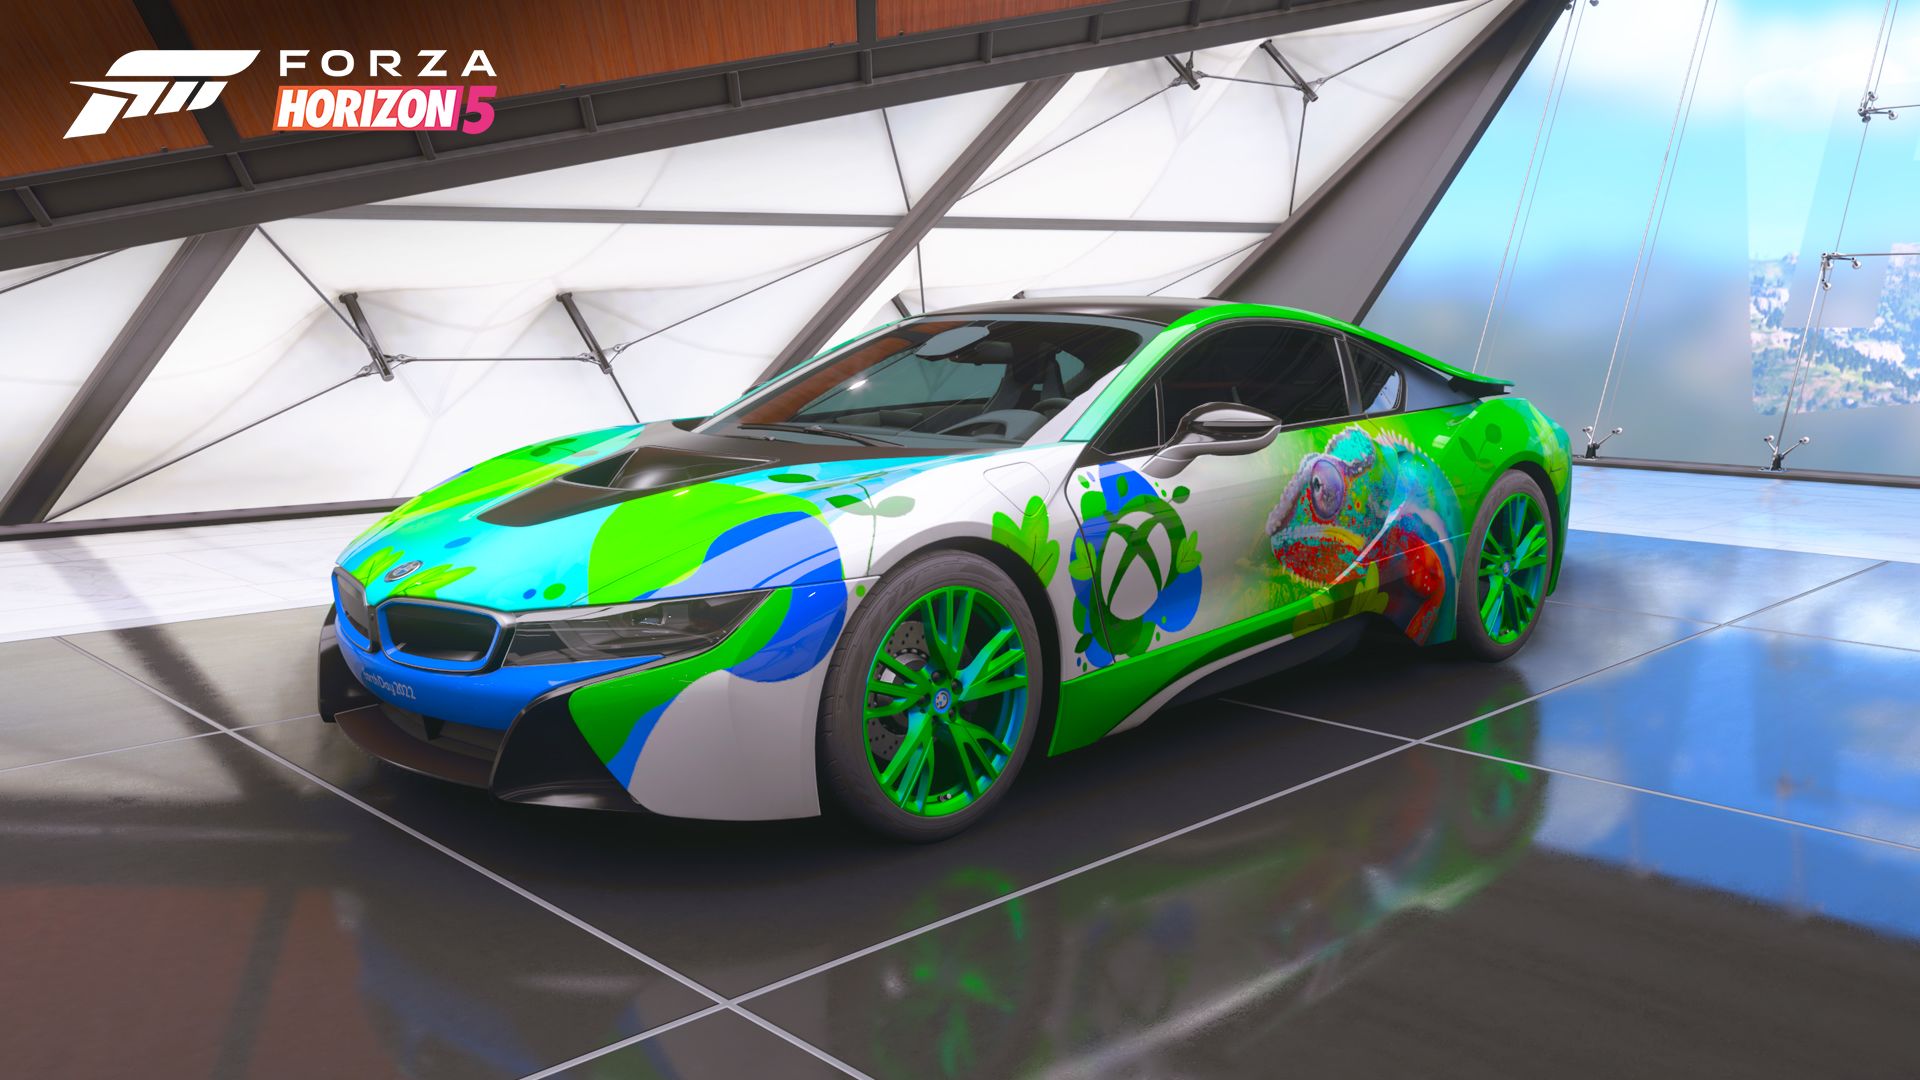 Ein 2015er BMW i8 steht in einer professionell beleuchteten Garage. Das Auto ist in Blau-, Grün- und Weißtönen lackiert und weist Formen auf, die an Pflanzenlaub erinnern. Das Xbox-Logo ist an der Seite des Fahrzeugs zu sehen, neben einem detaillierten Bild eines Chamäleons in ähnlichen Farben.